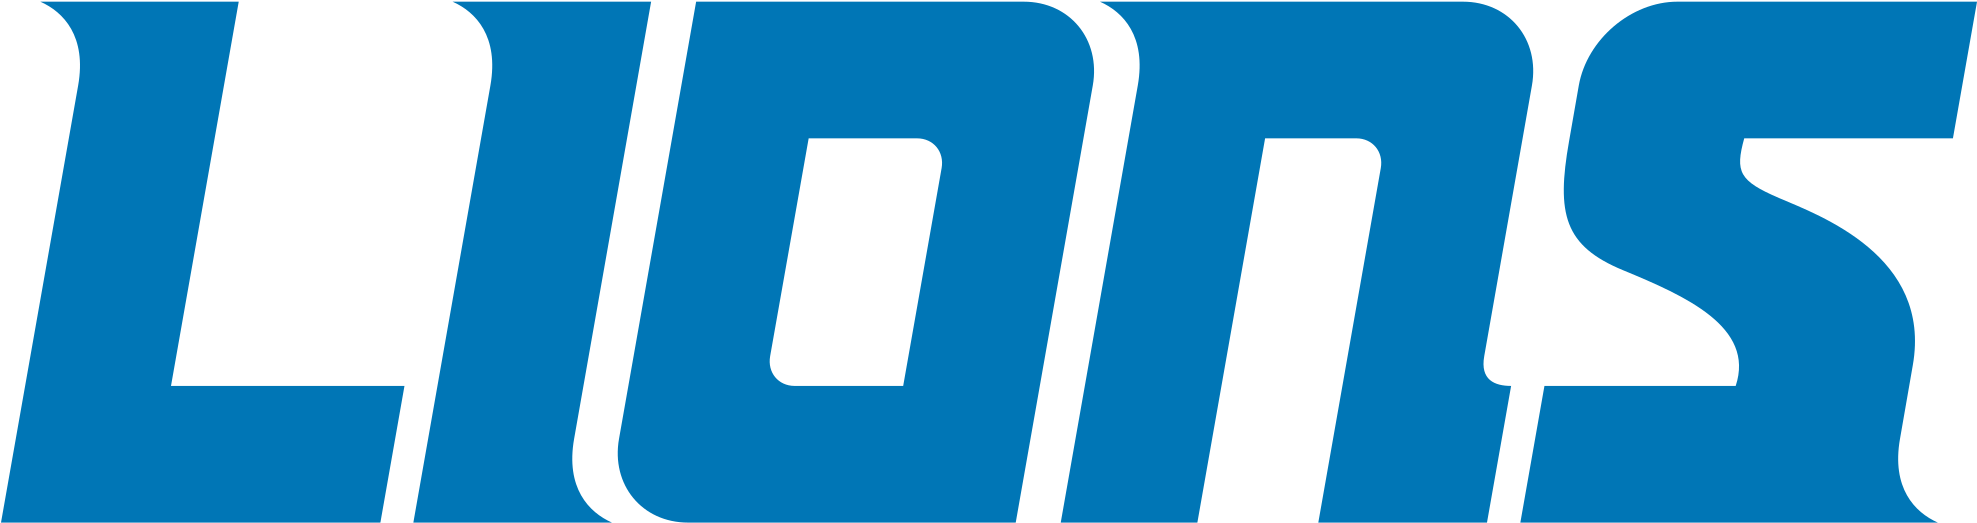 Detroit Lions Text Logo PNG